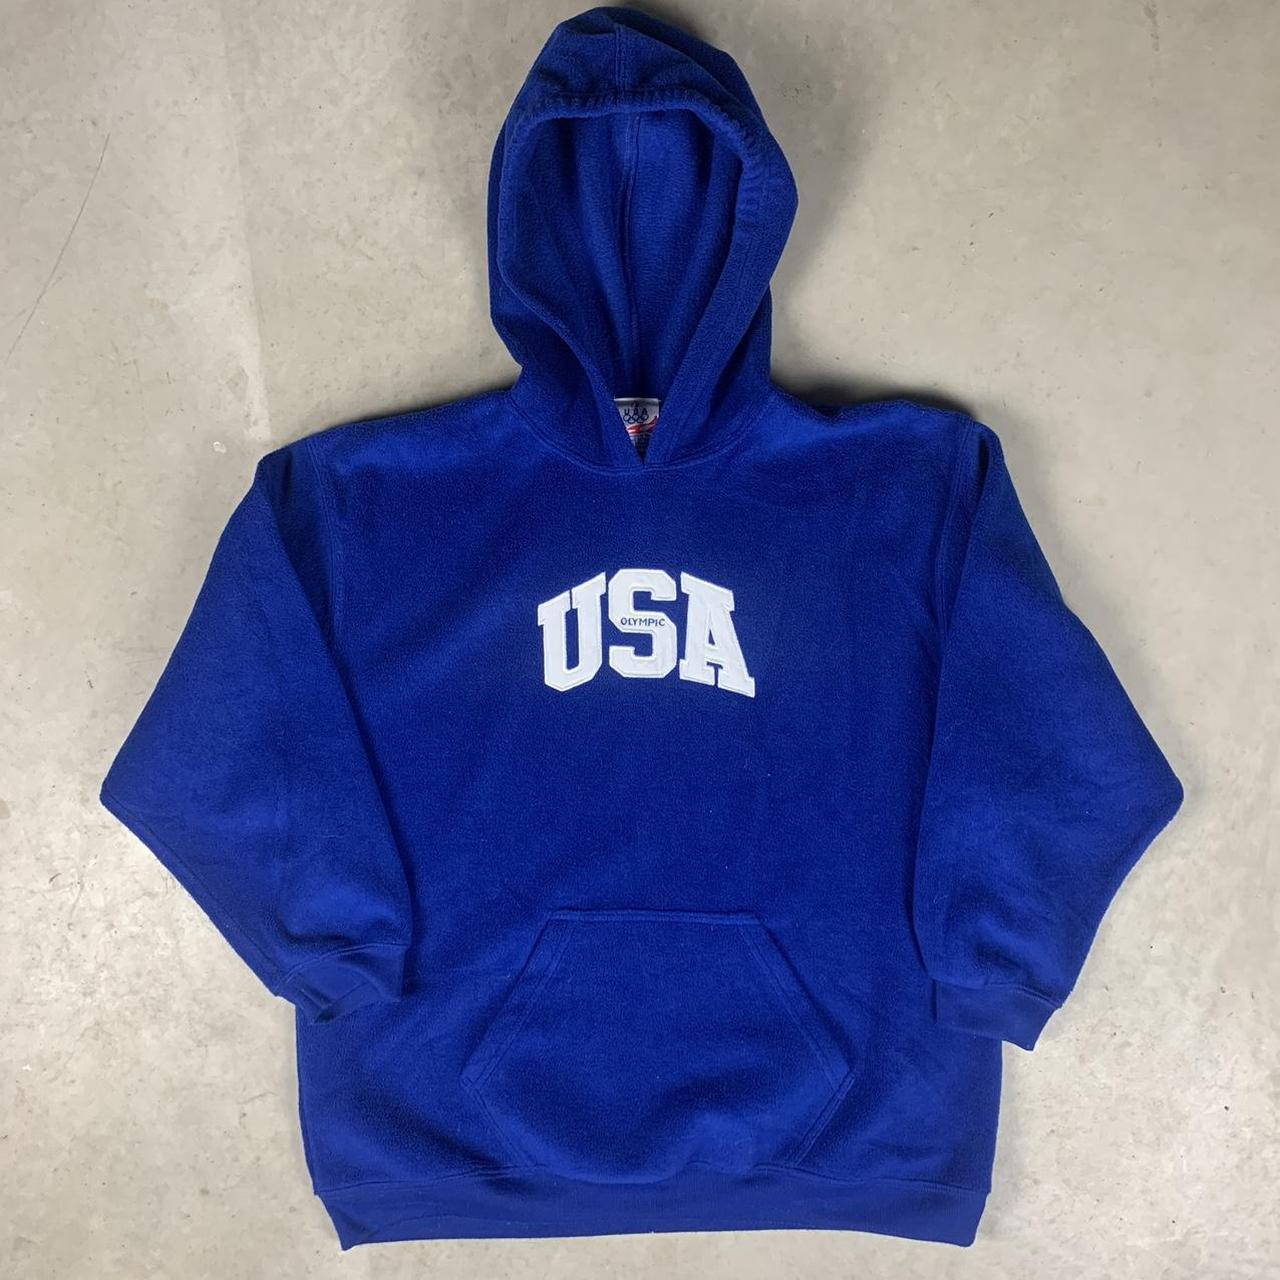 Vintage USA Olympics fleece hoodie Size XL Fits like... - Depop